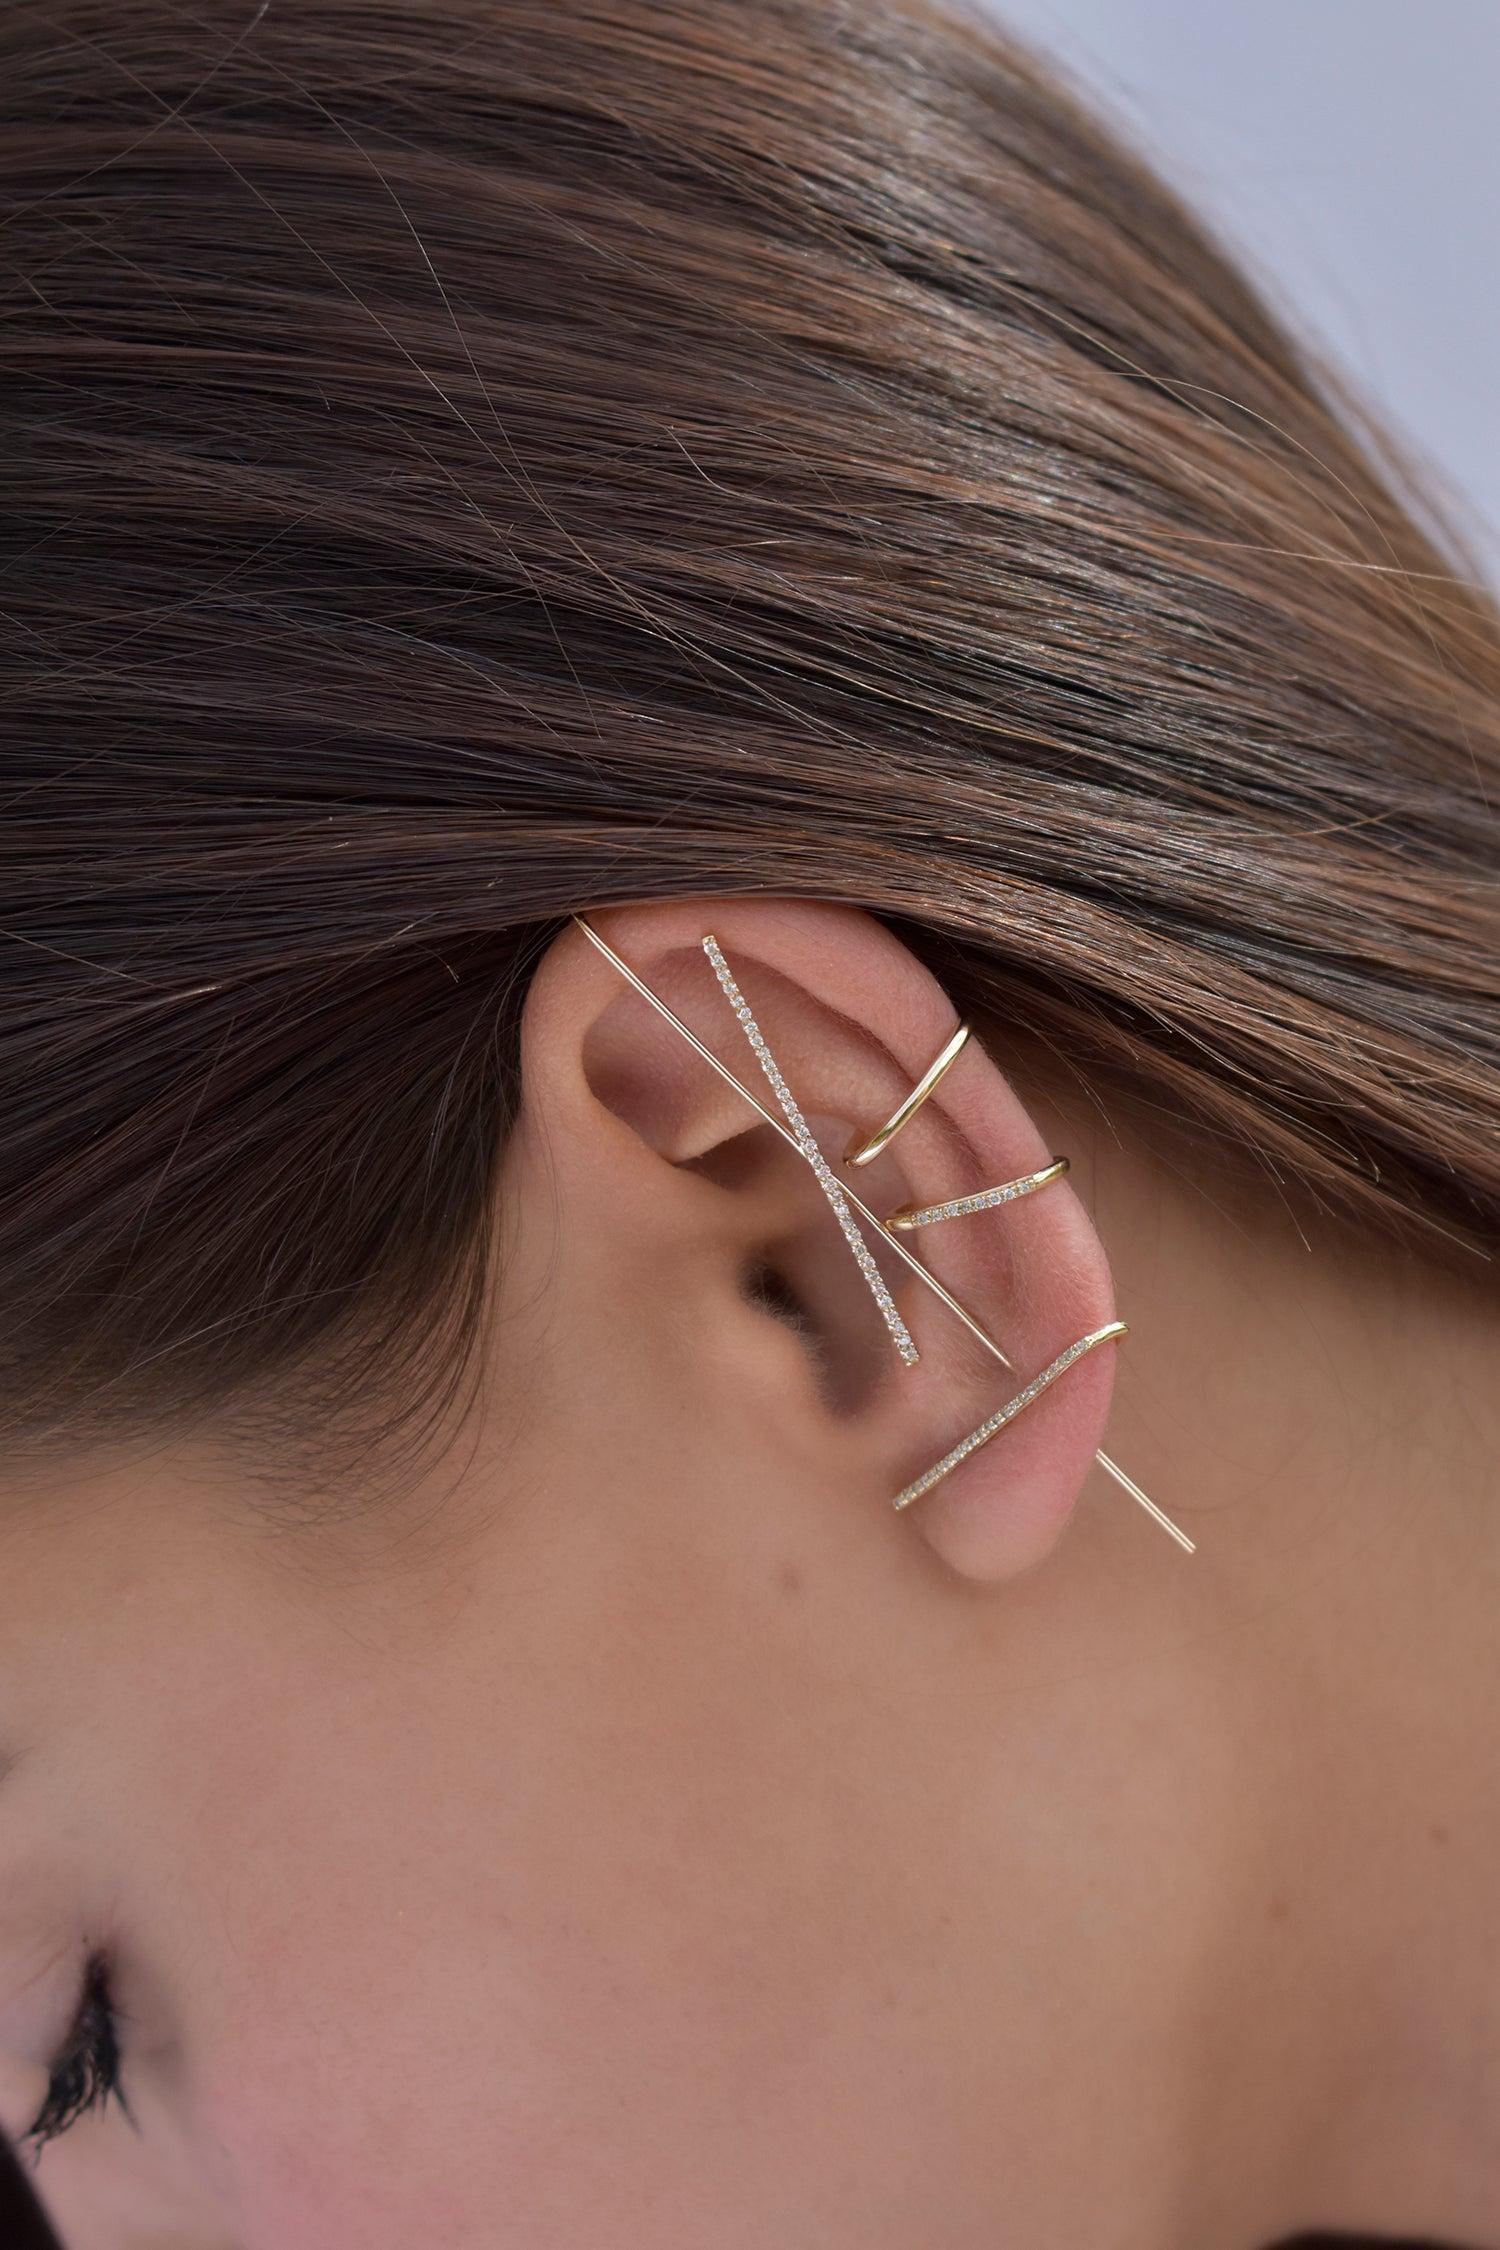 La boucle d'oreille Horizon Needle est constituée d'une délicate tige en or ressemblant à une aiguille, avec une barre transversale ornée de diamants. Ce style crée une illusion saisissante sur votre oreille. Portez-la seule ou en combinaison avec